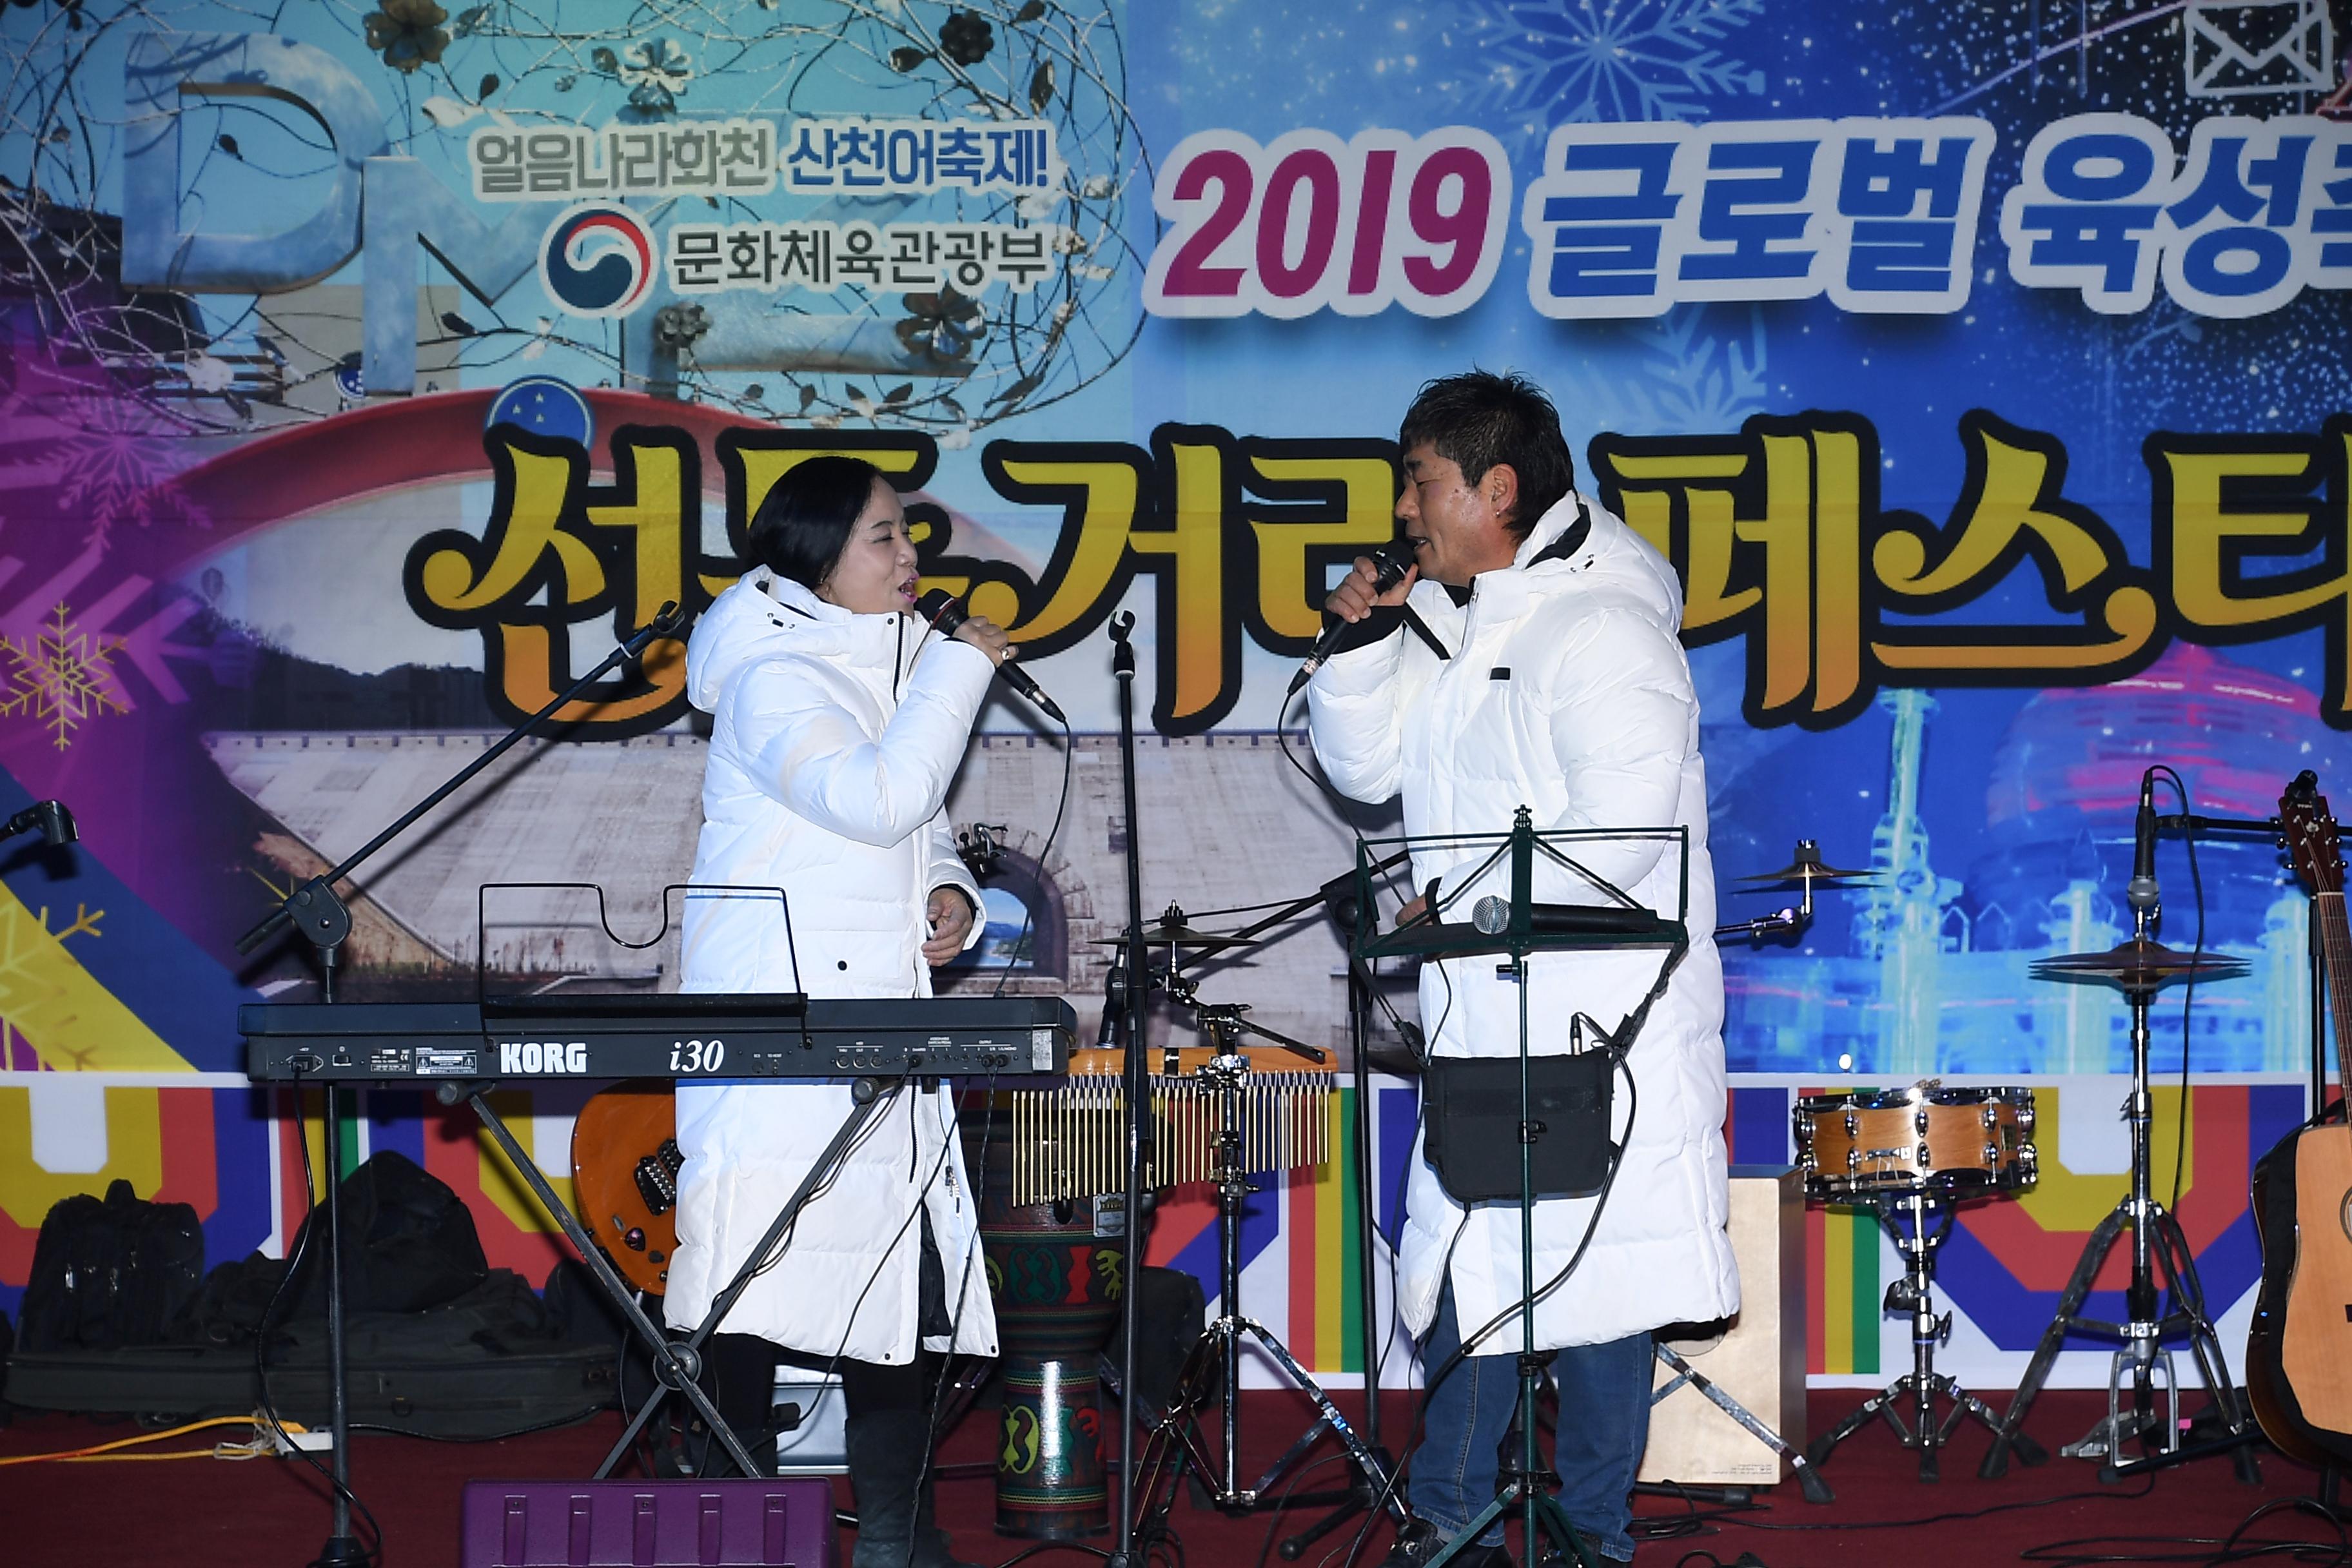 2019 화천산천어축제 선등거리 공연 전경 사진